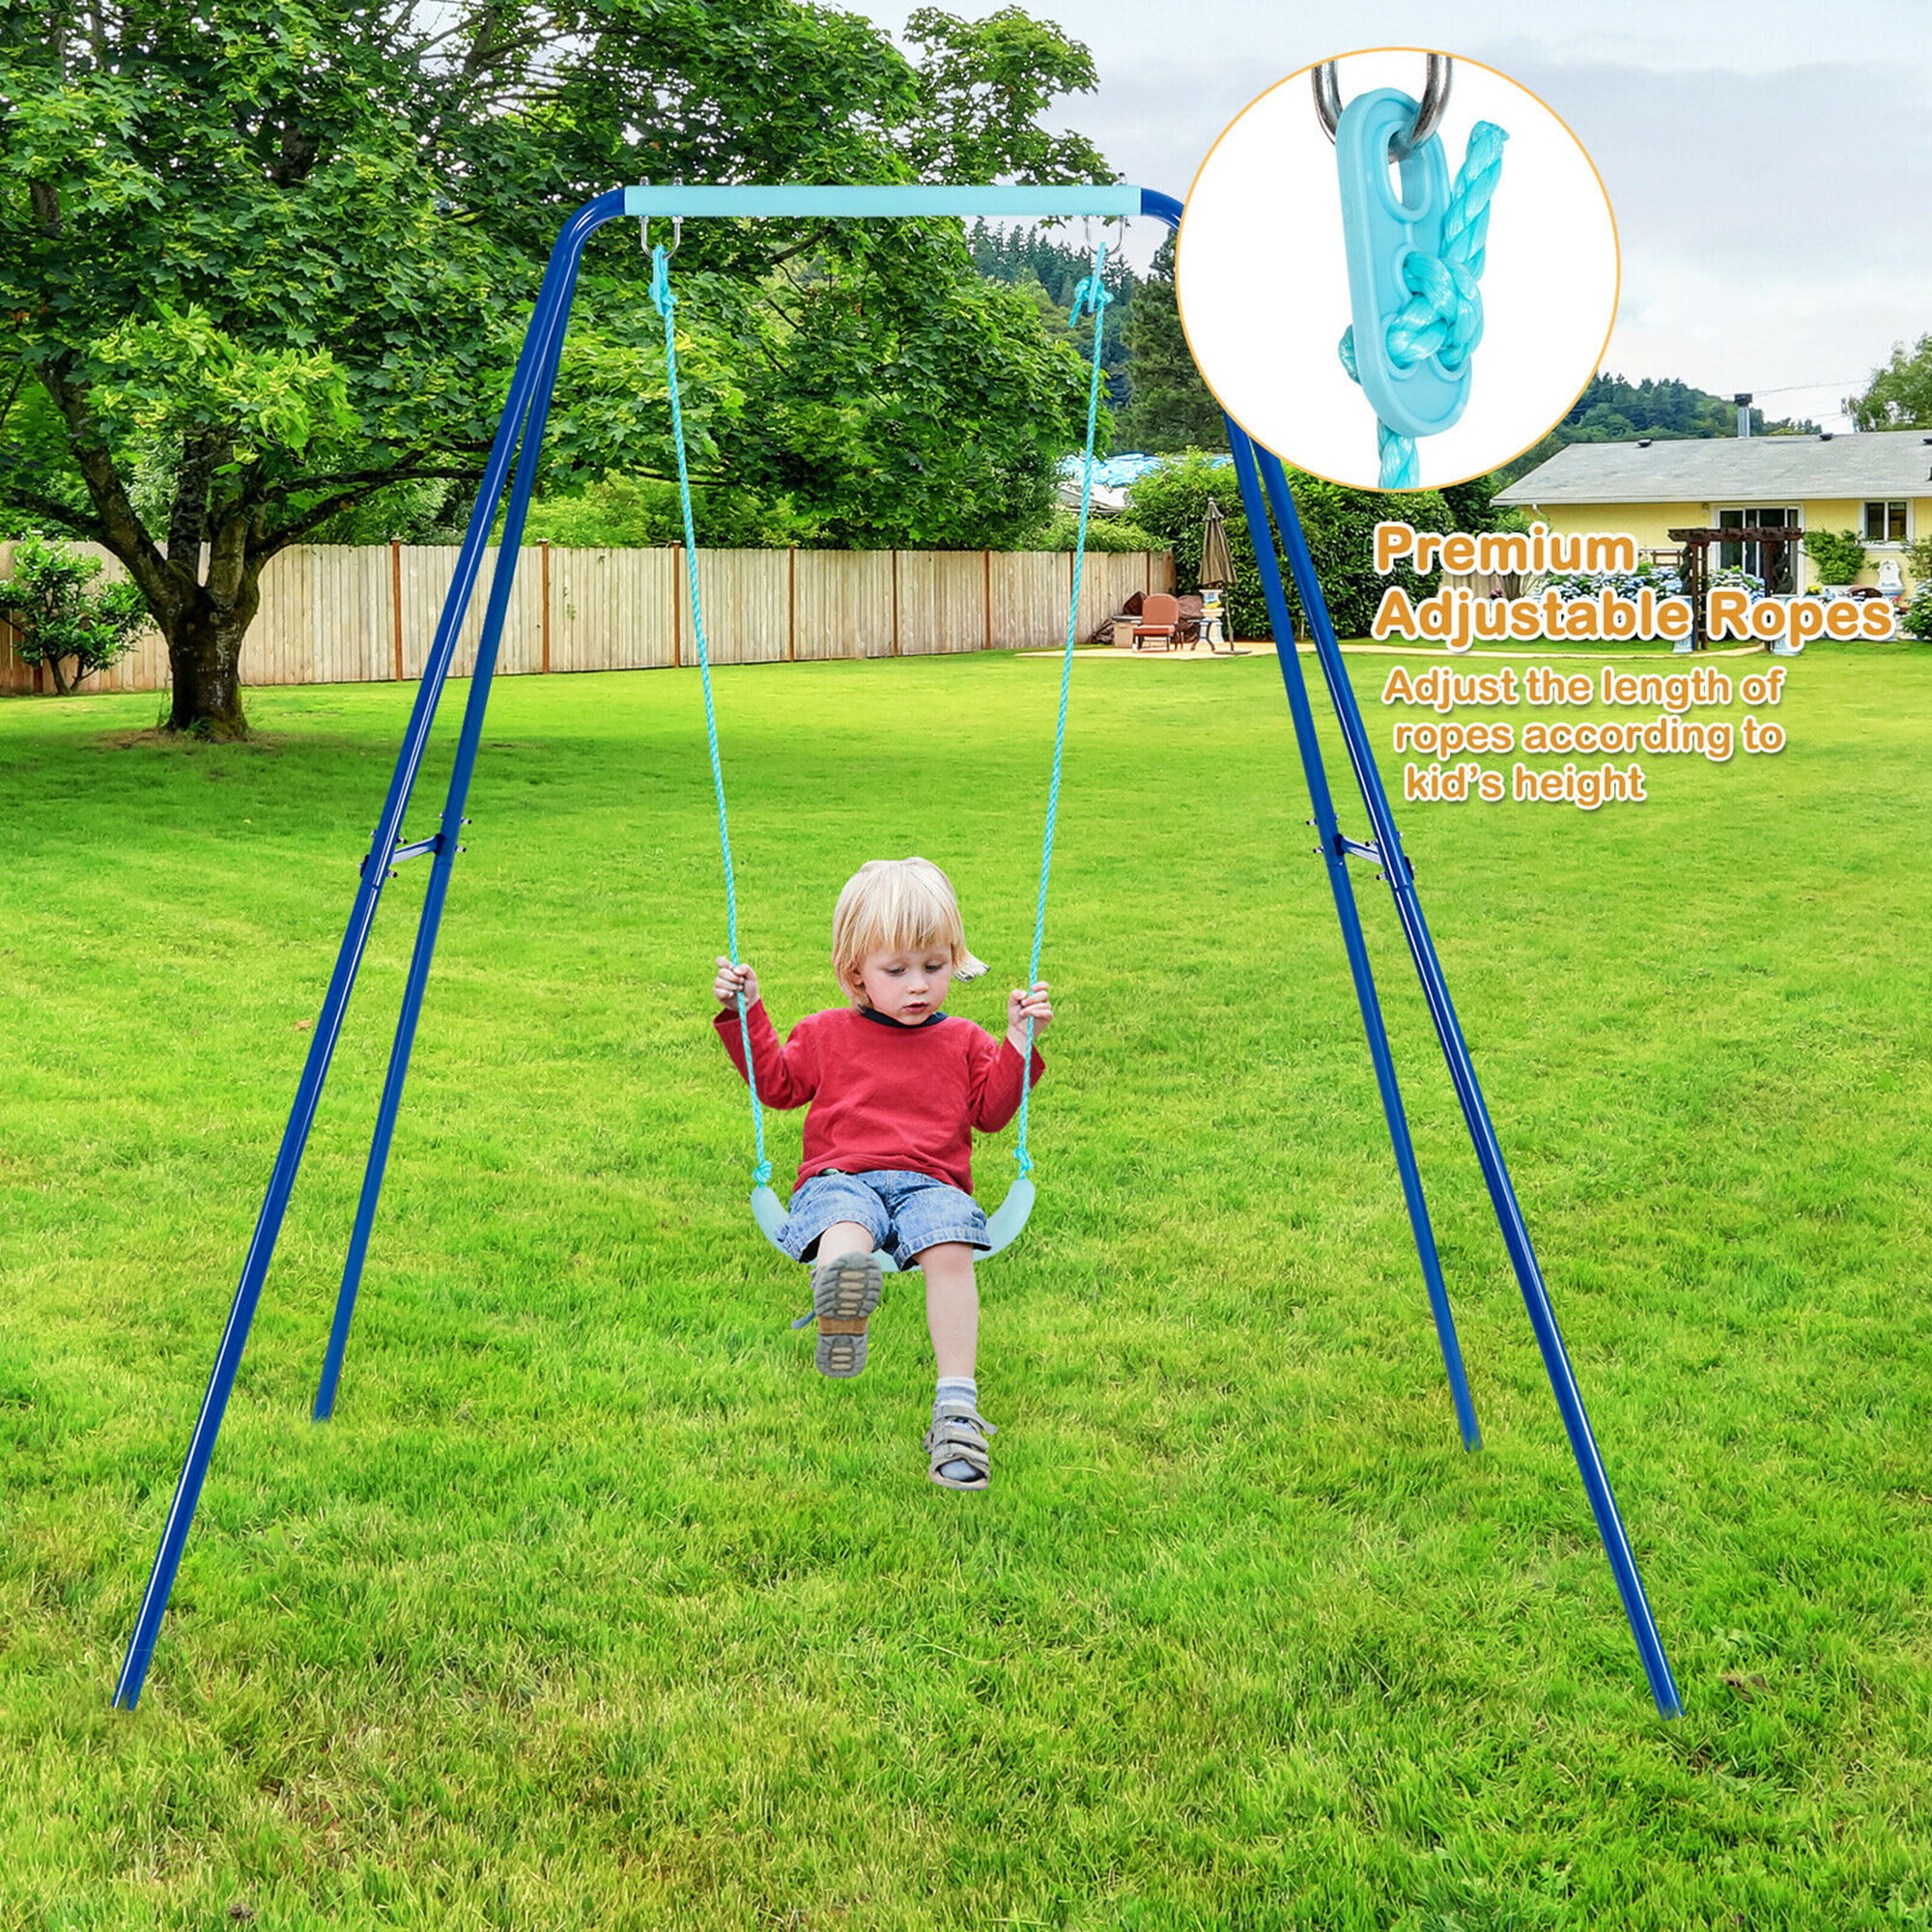 XXL 5 Children Metal Frame Swing Glider Set Outdoor Garden Play Activity Centre 